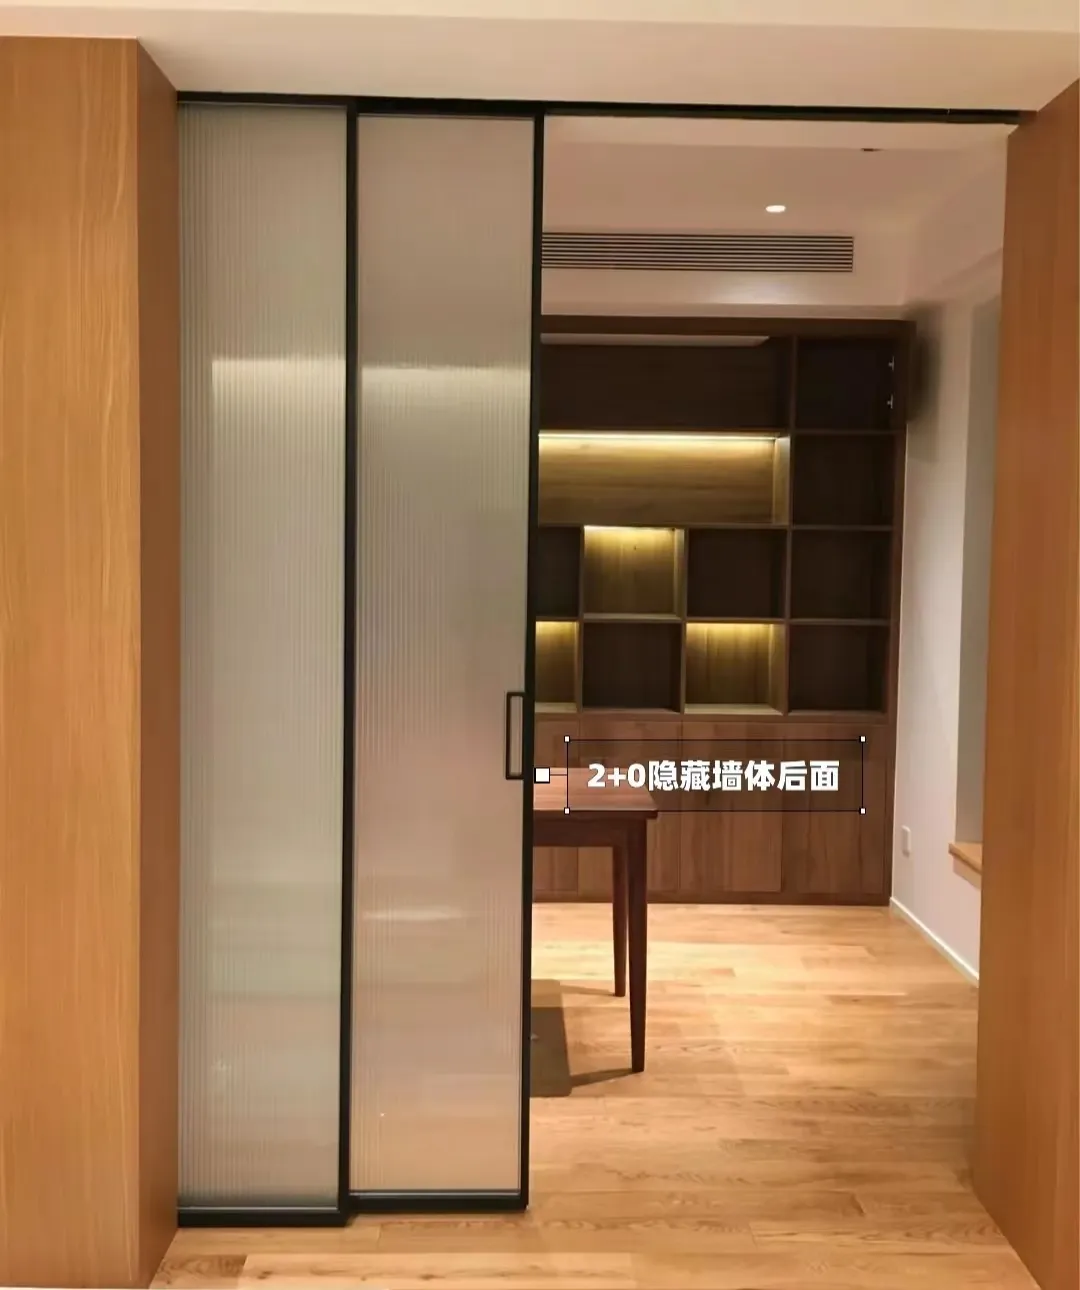 Portes coulissantes modernes en alliage d'aluminium Portes vitrées intérieures à isolation thermique Porte coulissante automatique pour villa appartement